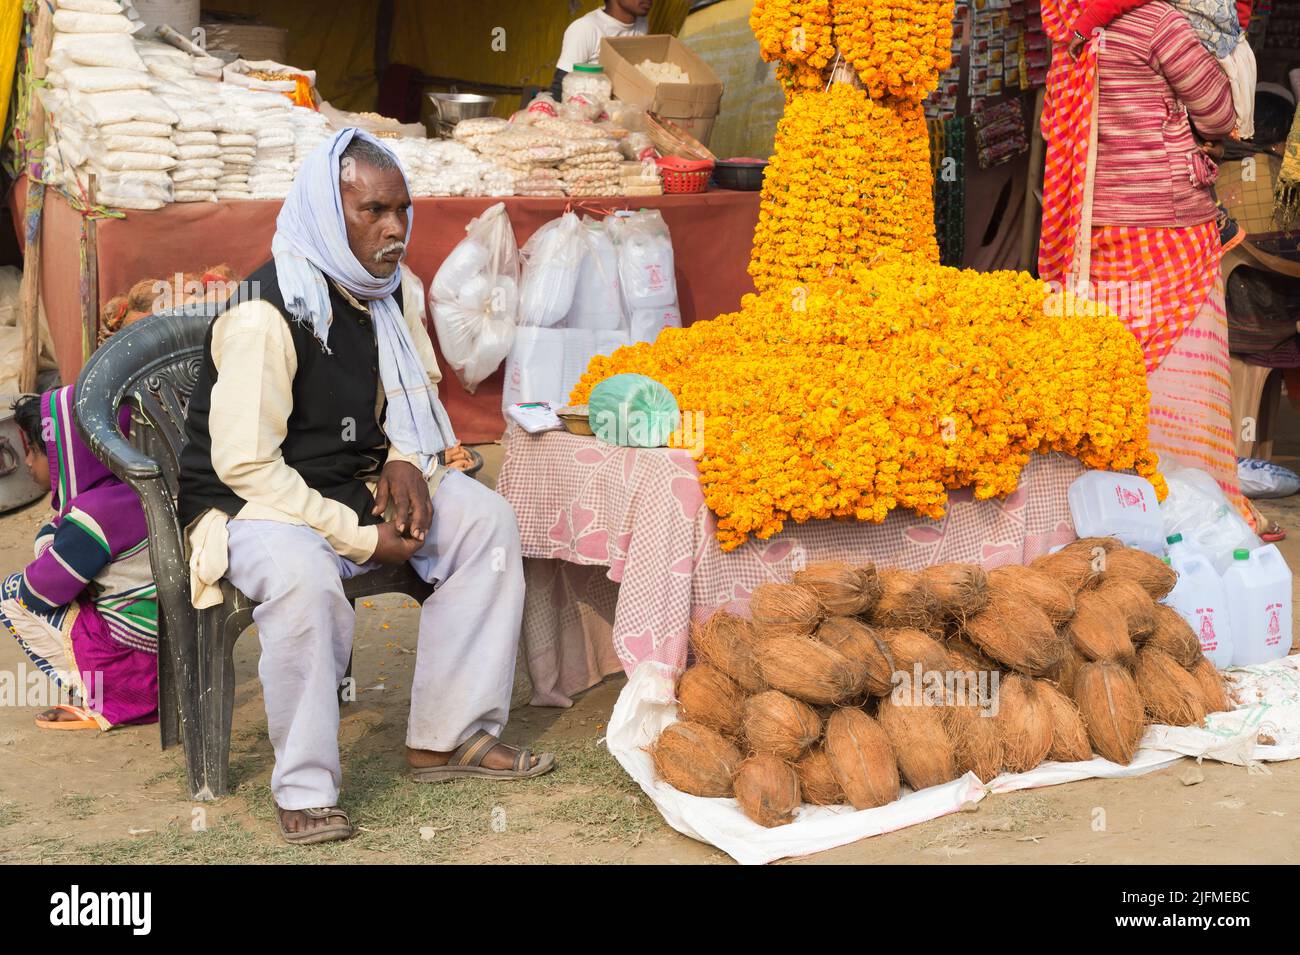 Hombre indio que vende cocos y guirnaldas de flores Marigold, Allahabad Kumbh Mela, la reunión religiosa más grande del mundo, Uttar Pradesh, India Foto de stock